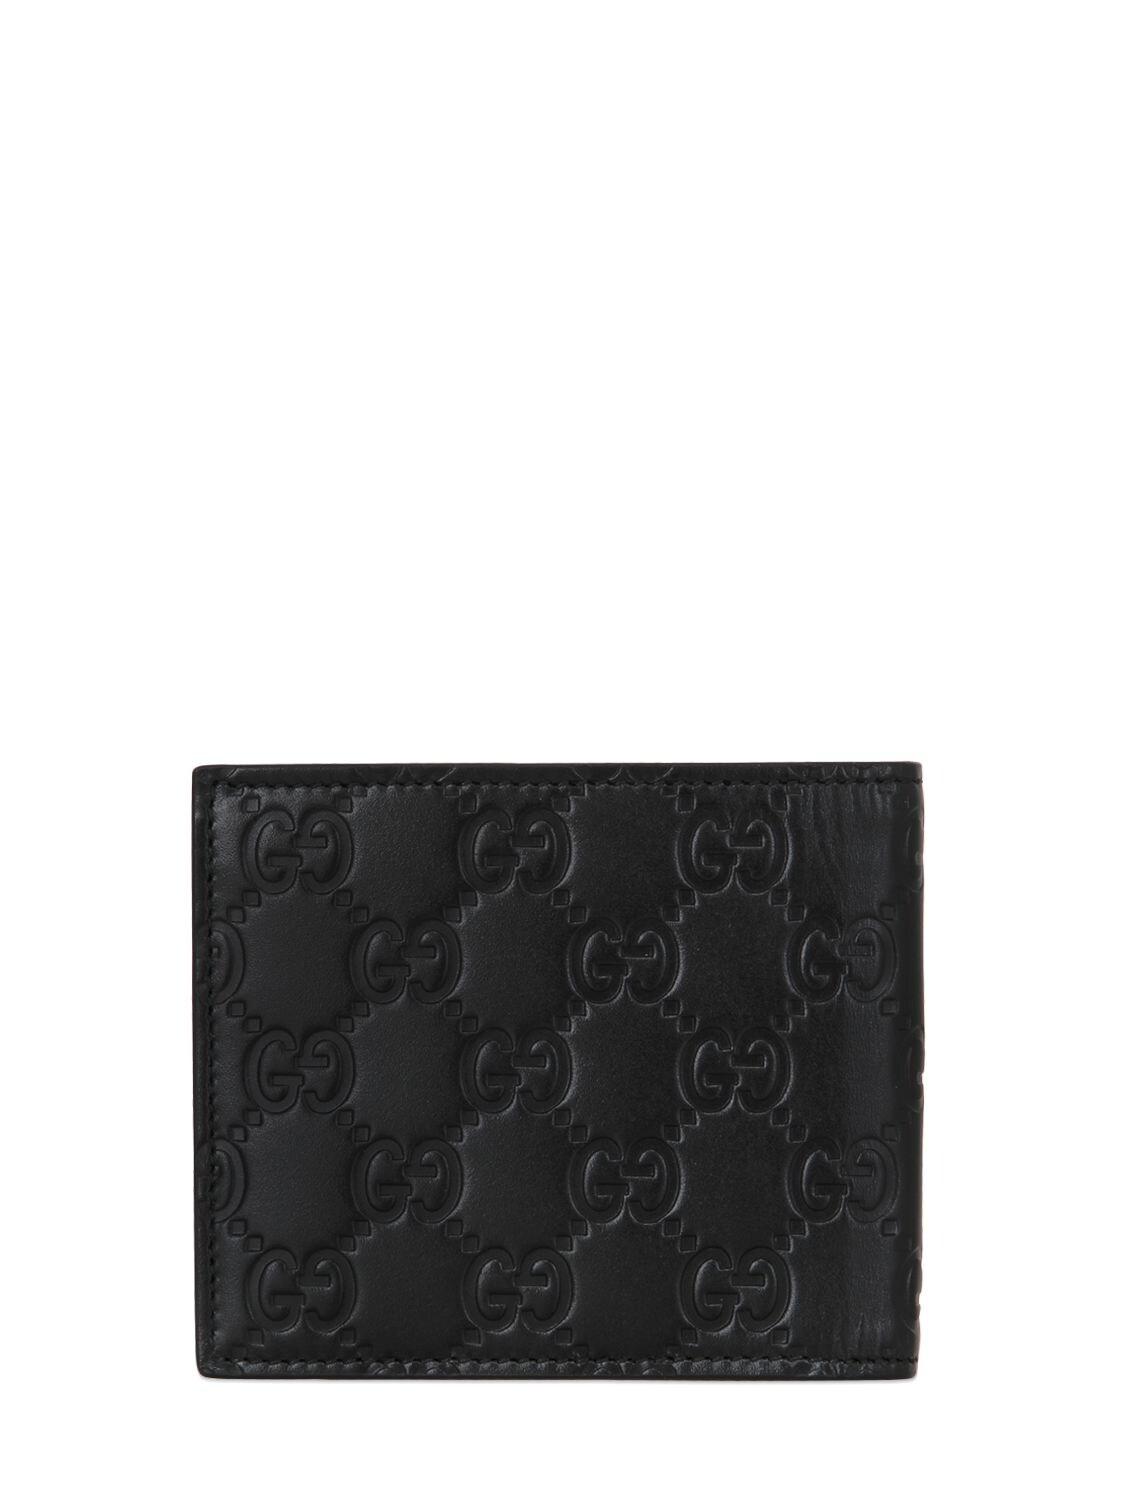 Gucci wallet money clip bi-fold wallet men's GG embossed black 676656  1W3AN1000